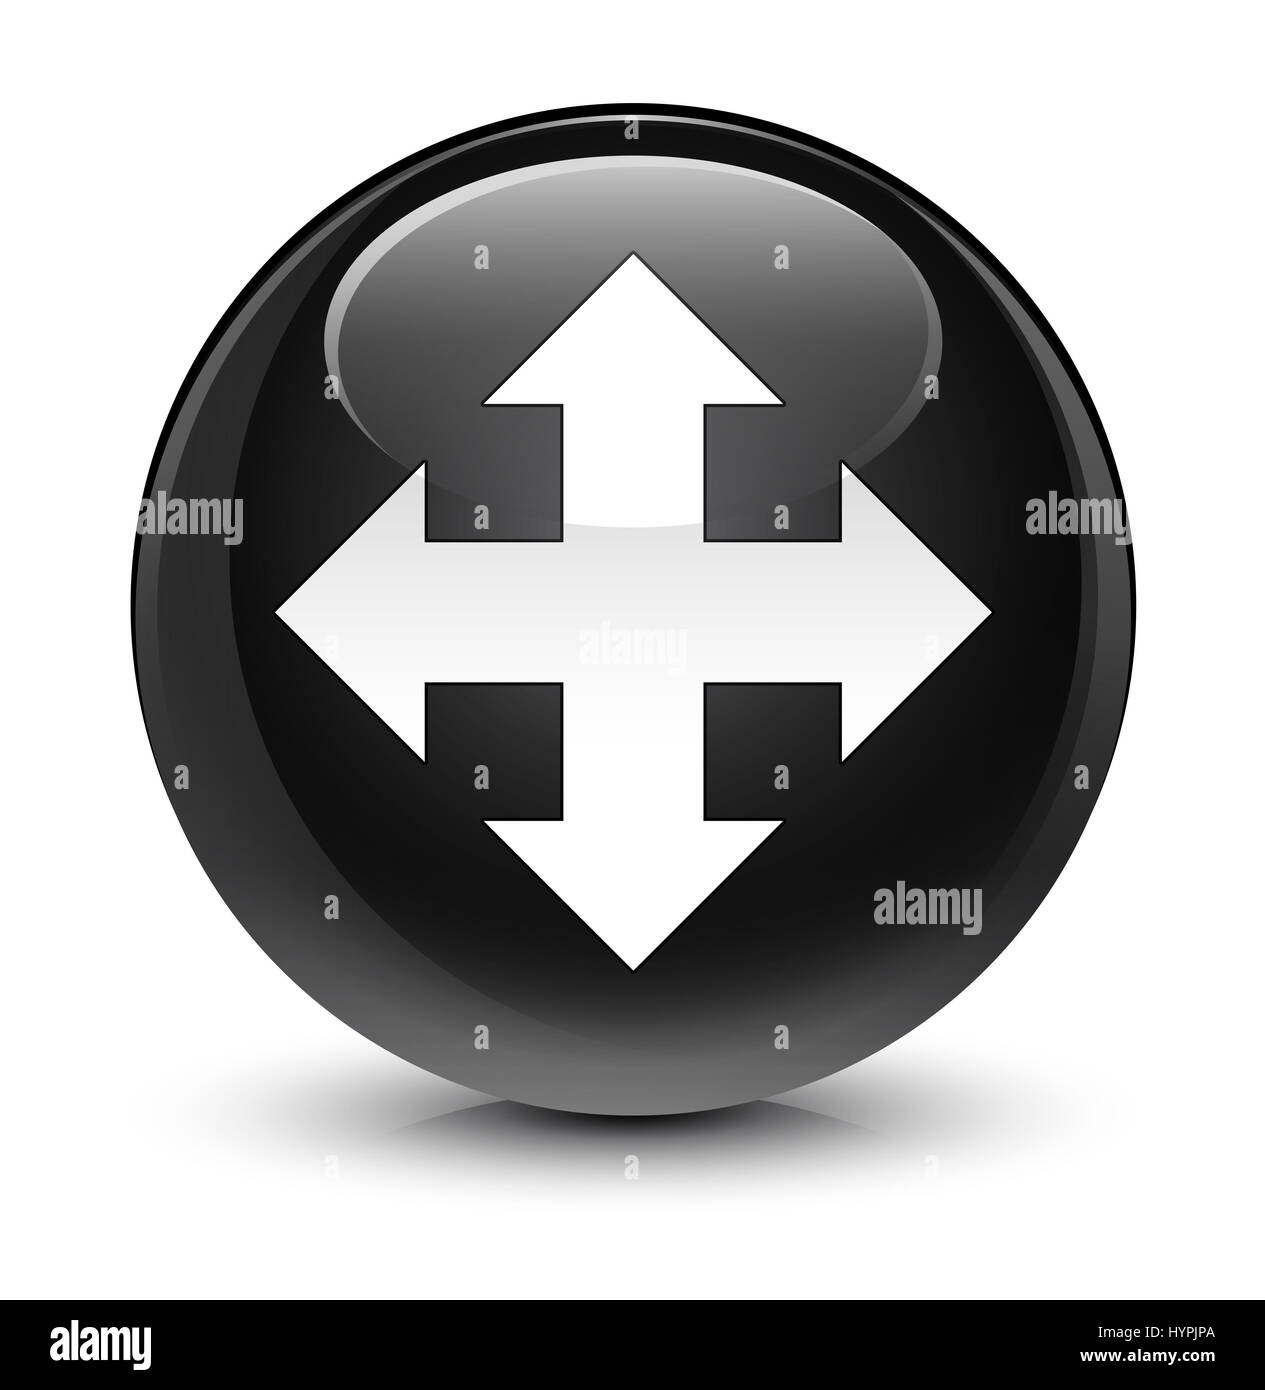 L'icône Déplacer isolé sur le bouton rond noir vitreux abstract illustration Banque D'Images